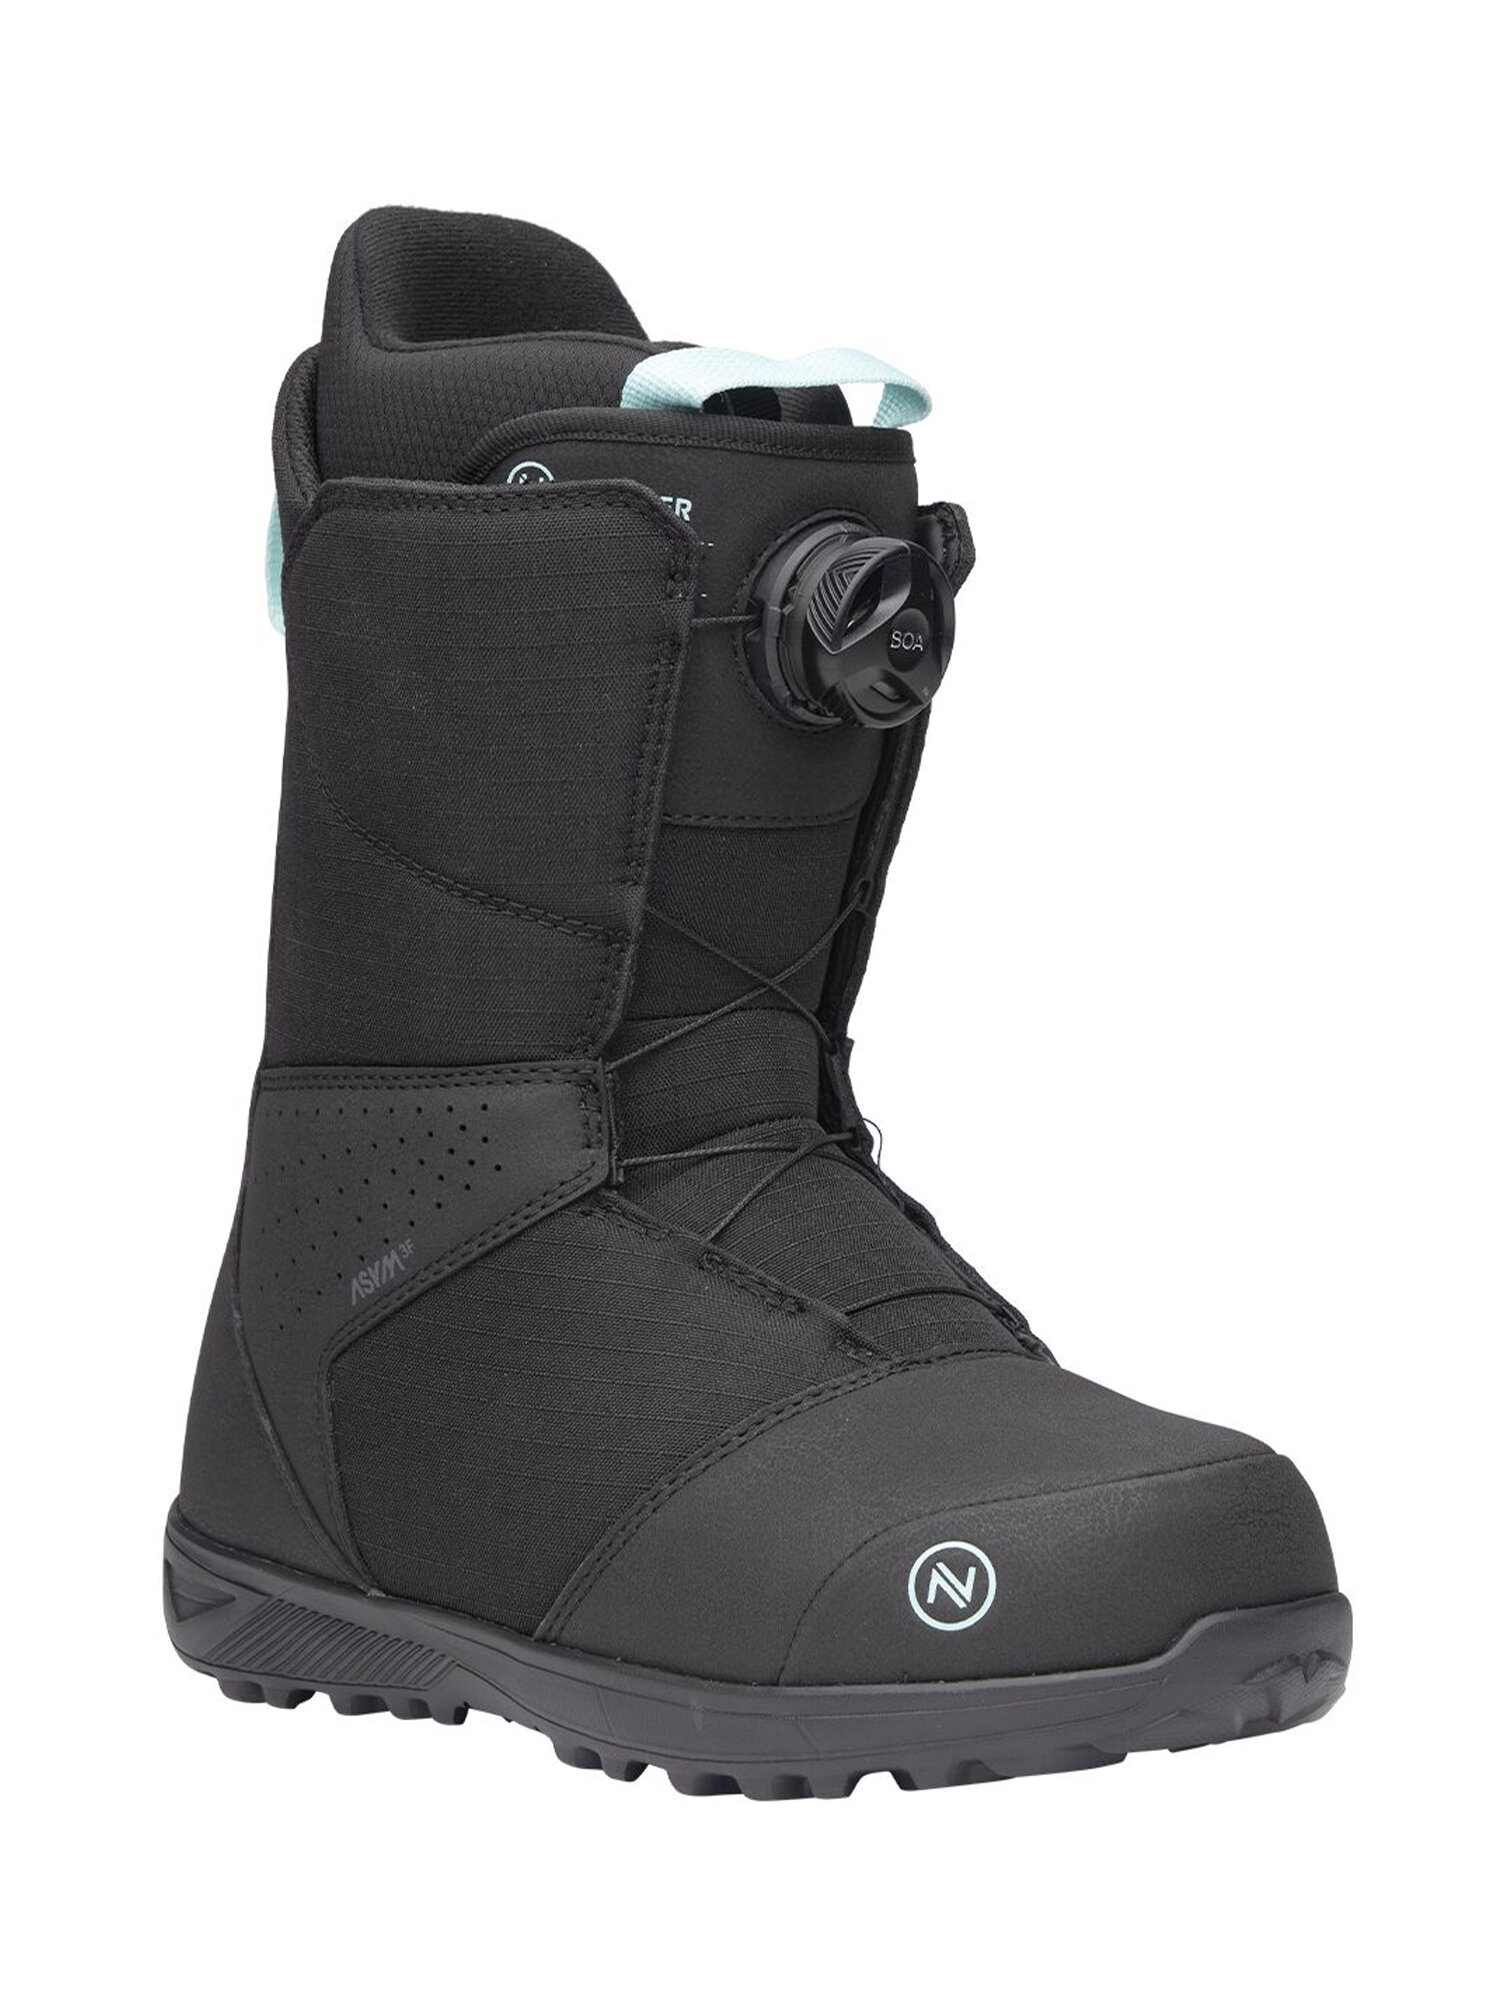 Ботинки для сноуборда NIDECKER Sierra W Black (US:5,5)